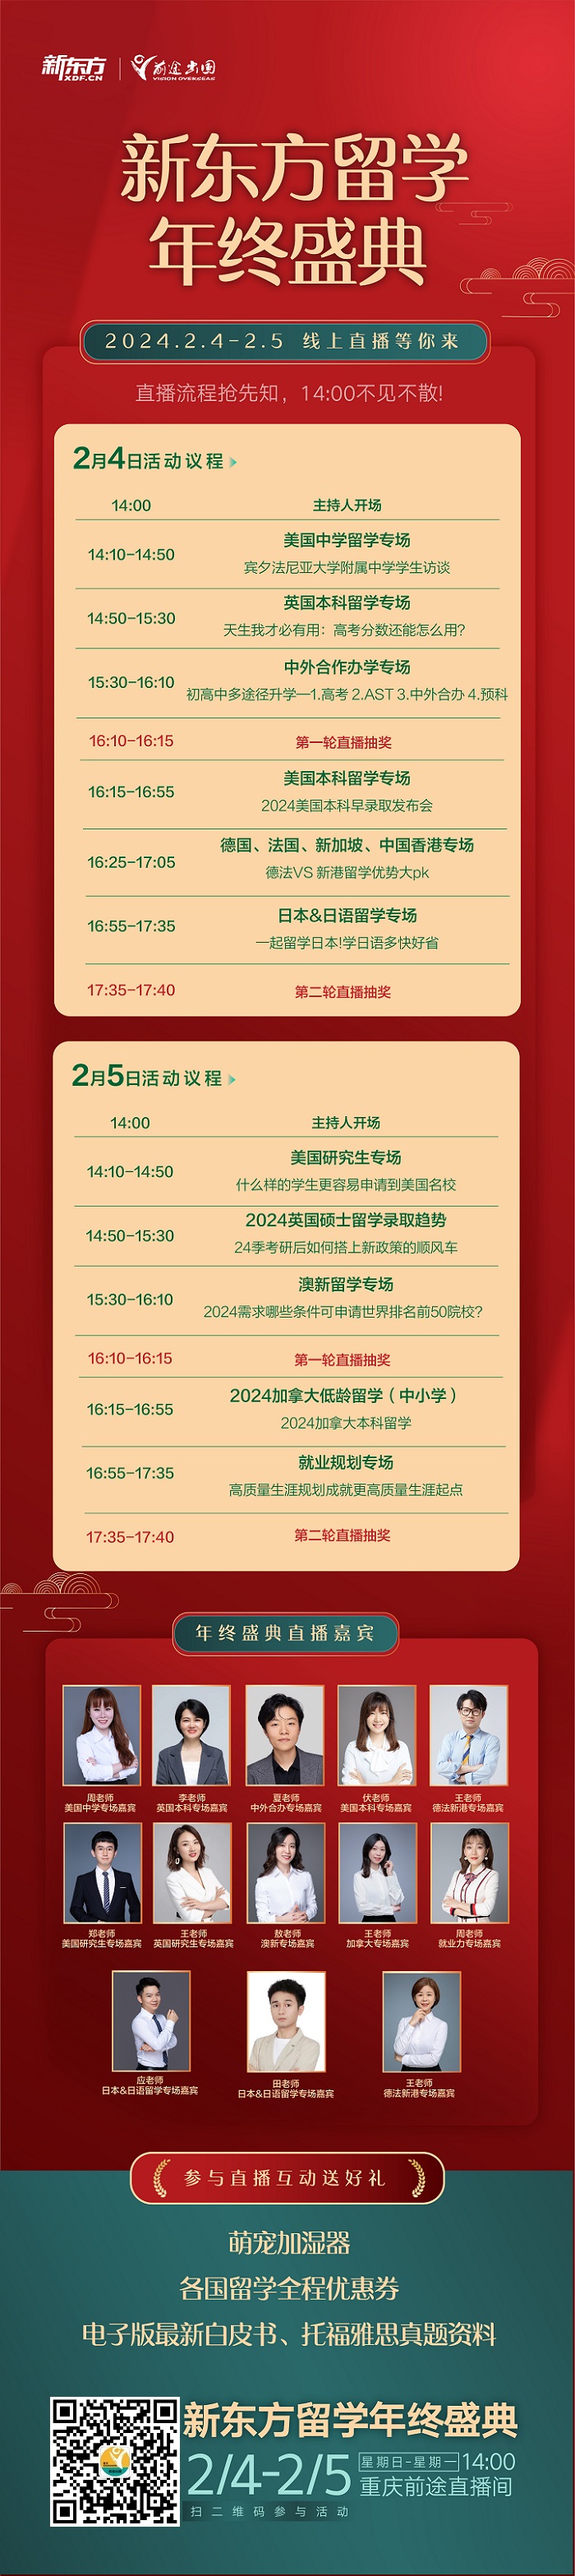 【直播】2.4-2.5重庆新东方留学年终盛典